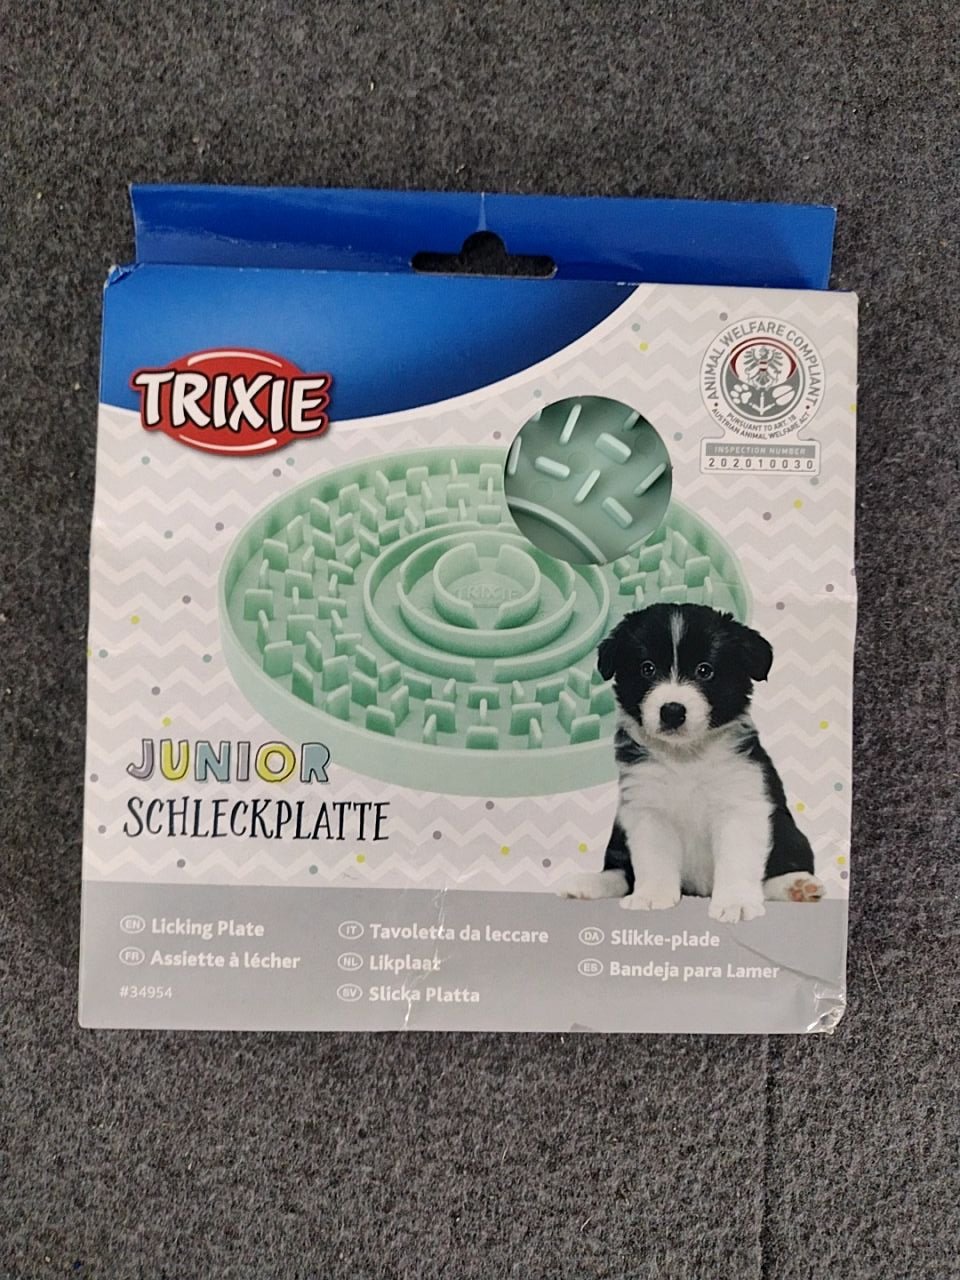 Lízací tác pro zklidnění psa Trixie